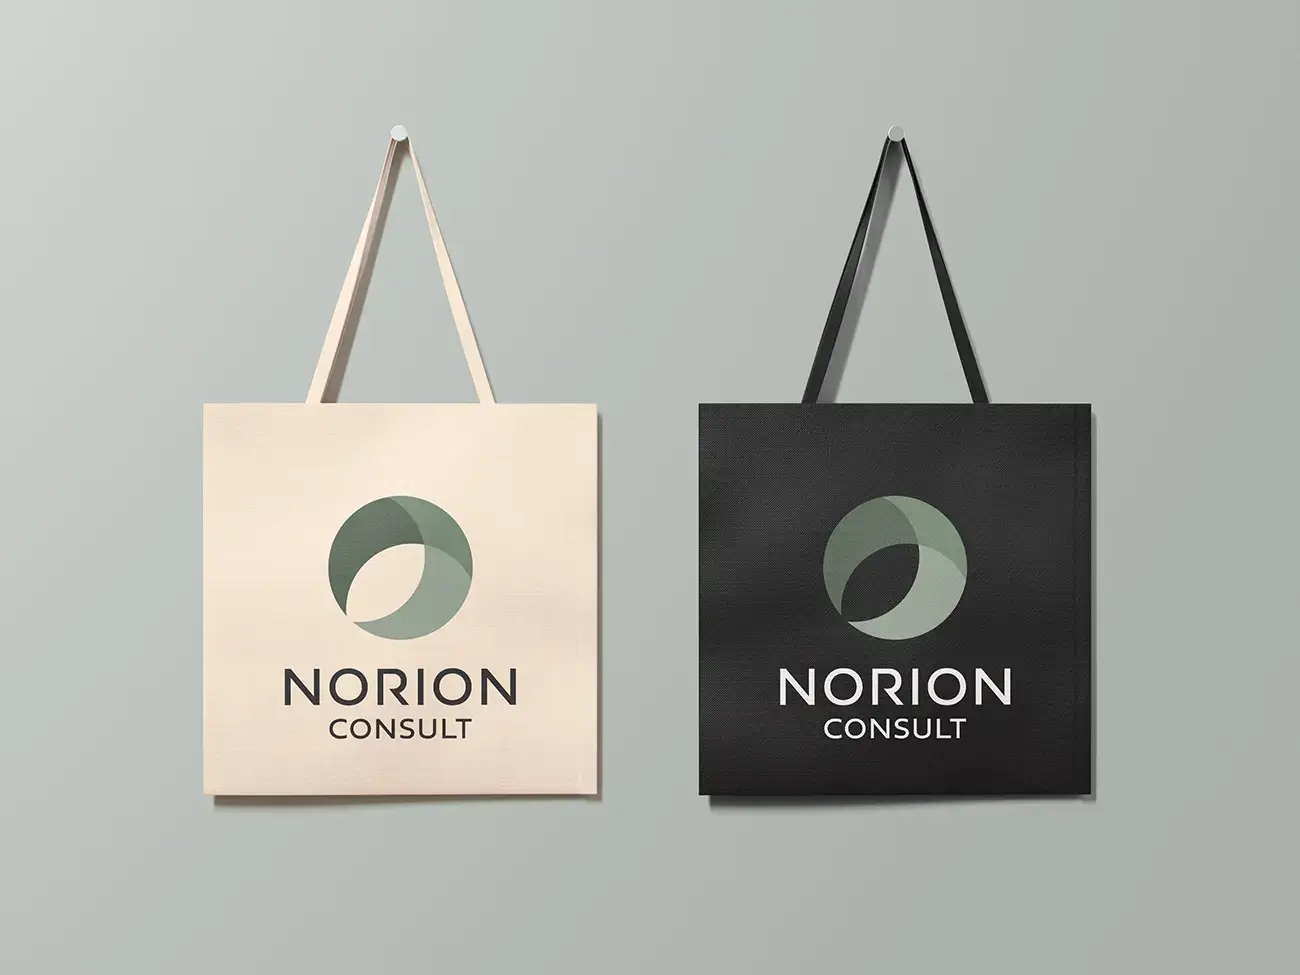 norion consult logo design